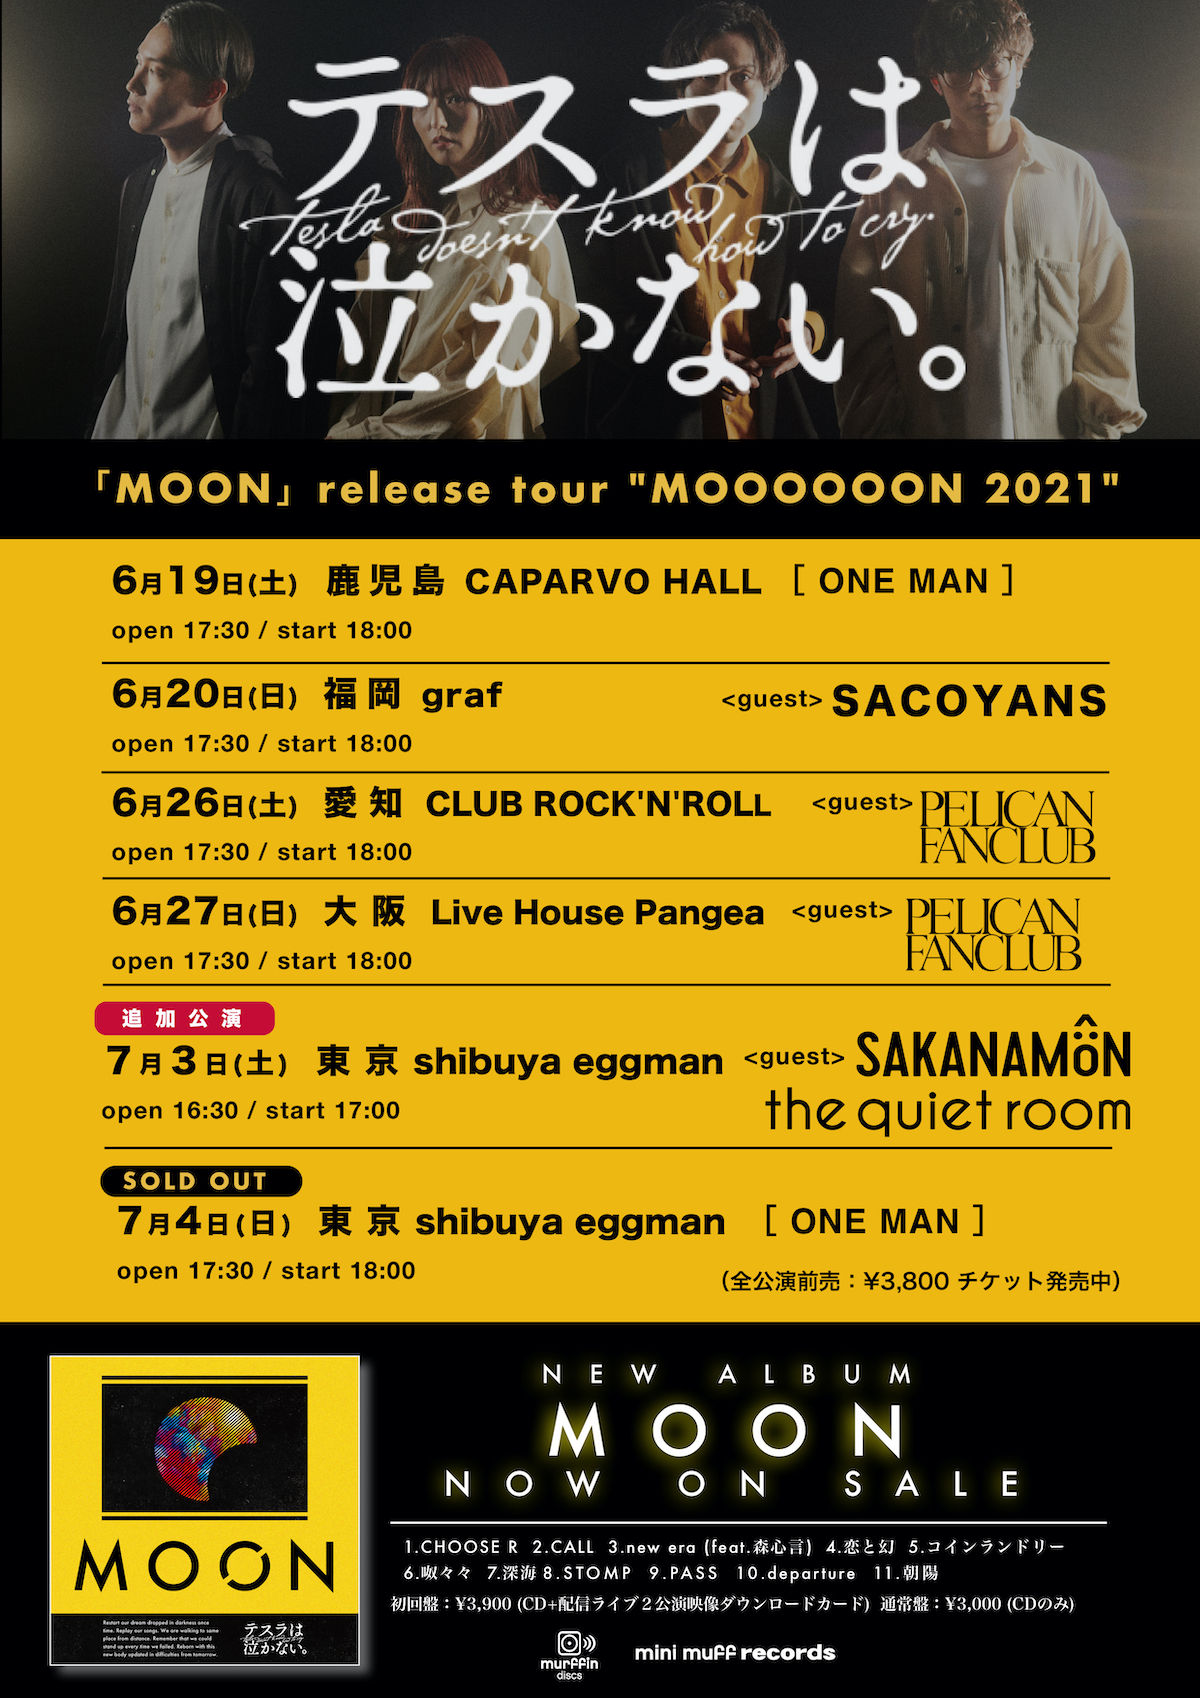 MOON release tour ”MOOOOOON 2021″